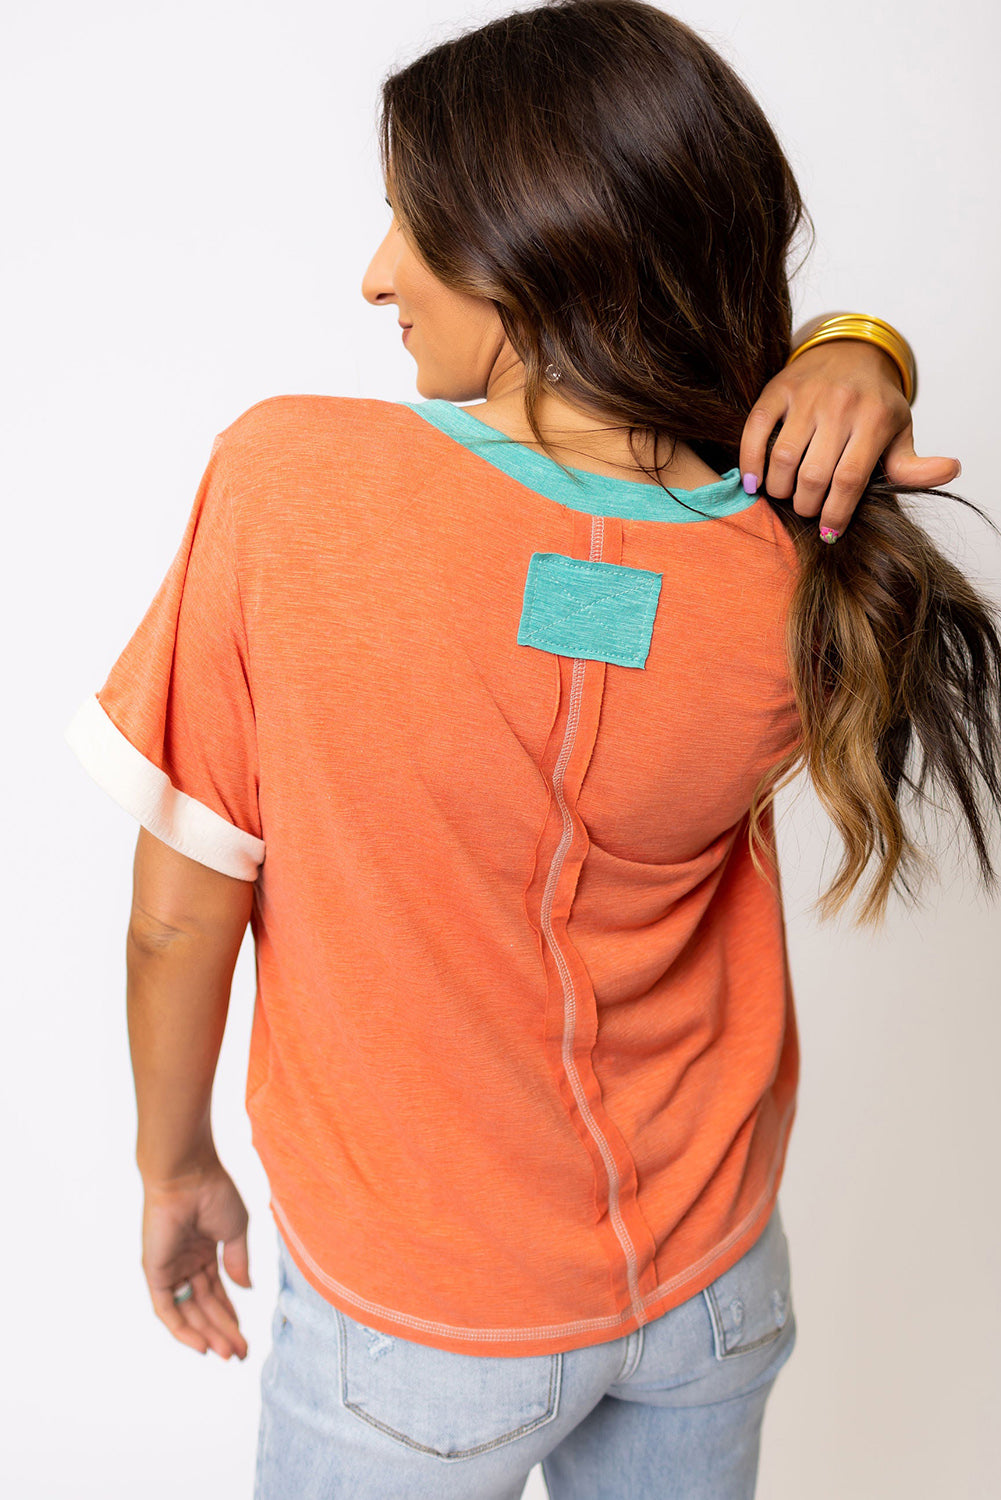 T-shirt con scollo a V con cuciture a vista e finiture a contrasto arancione pompelmo